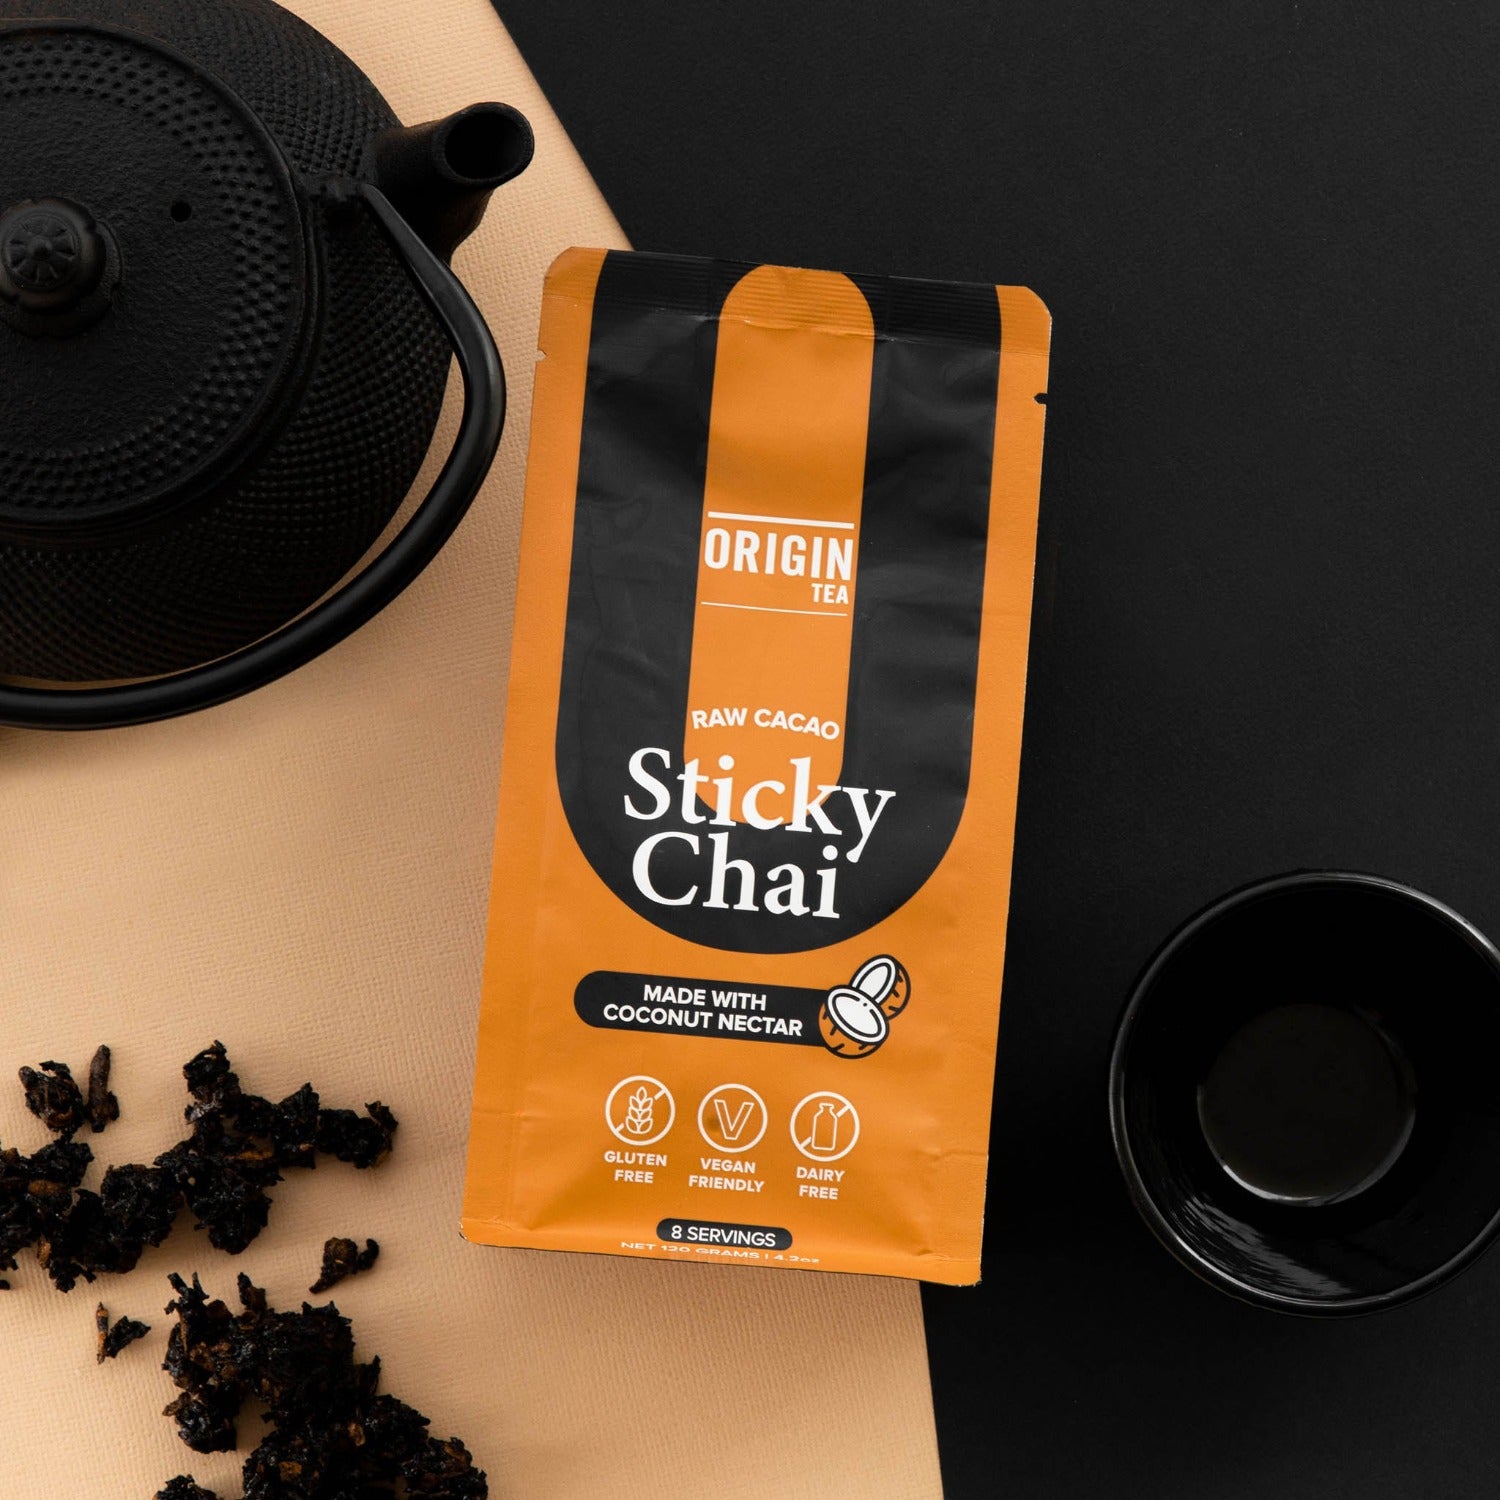 Raw Cacao Sticky Chai - 120g - Origin Tea